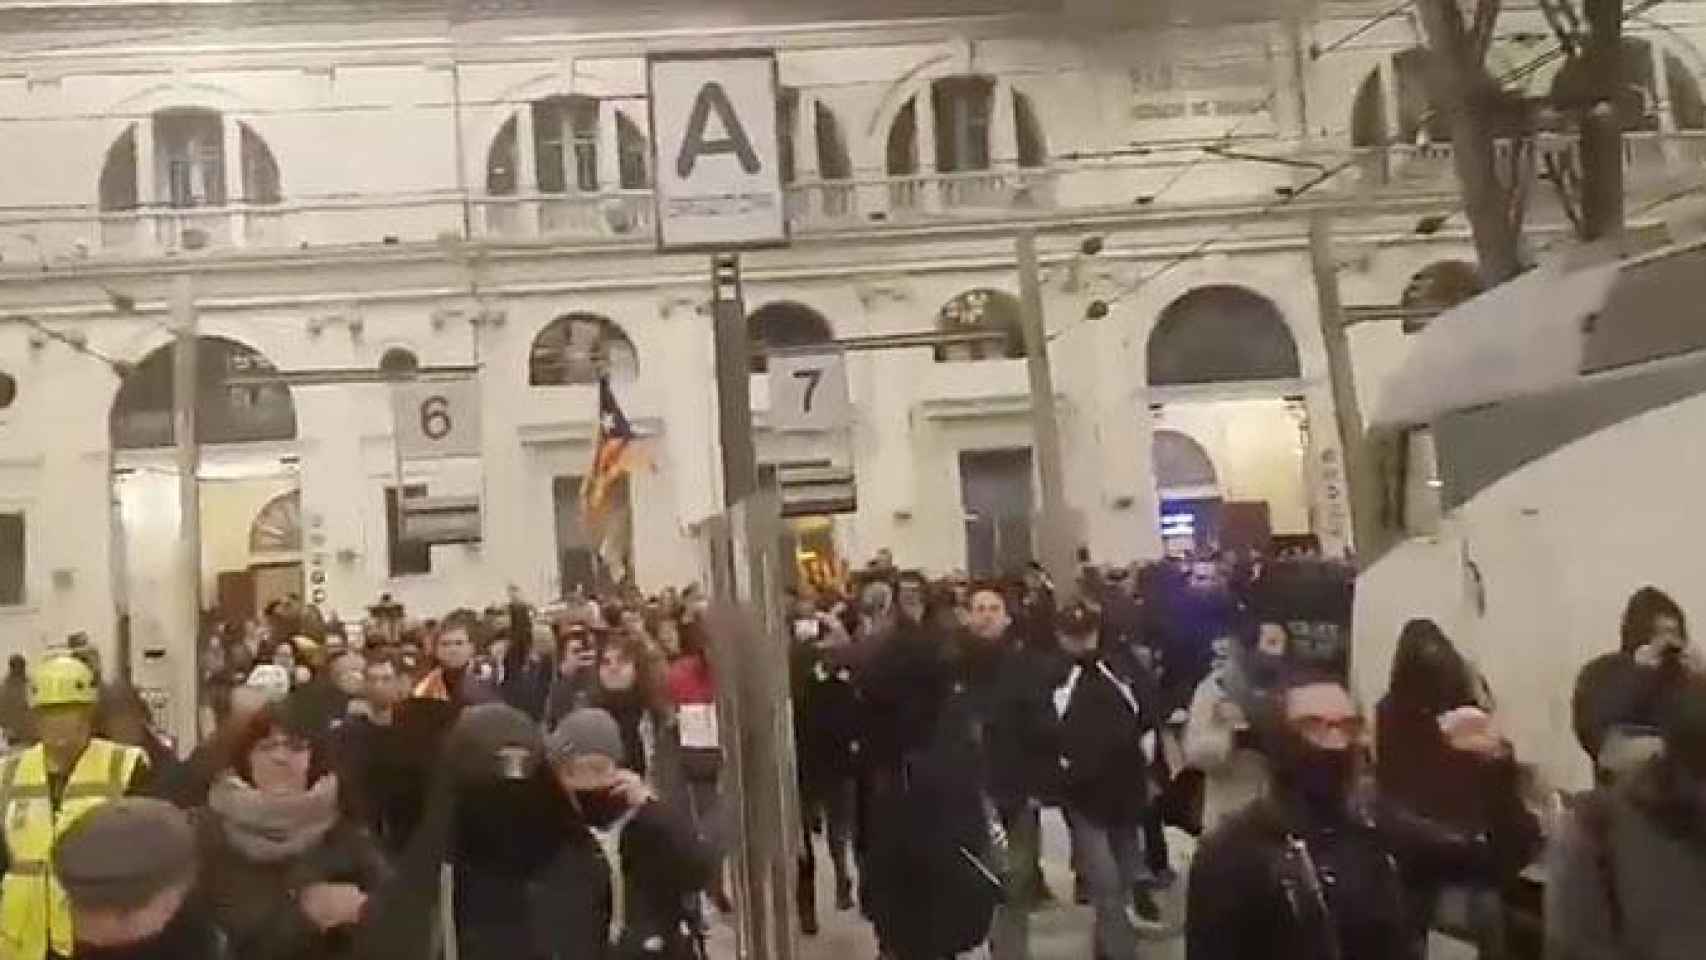 Independentistas entrando en la estación de Francia de Barcelona para ocupar las vías / TWITTER